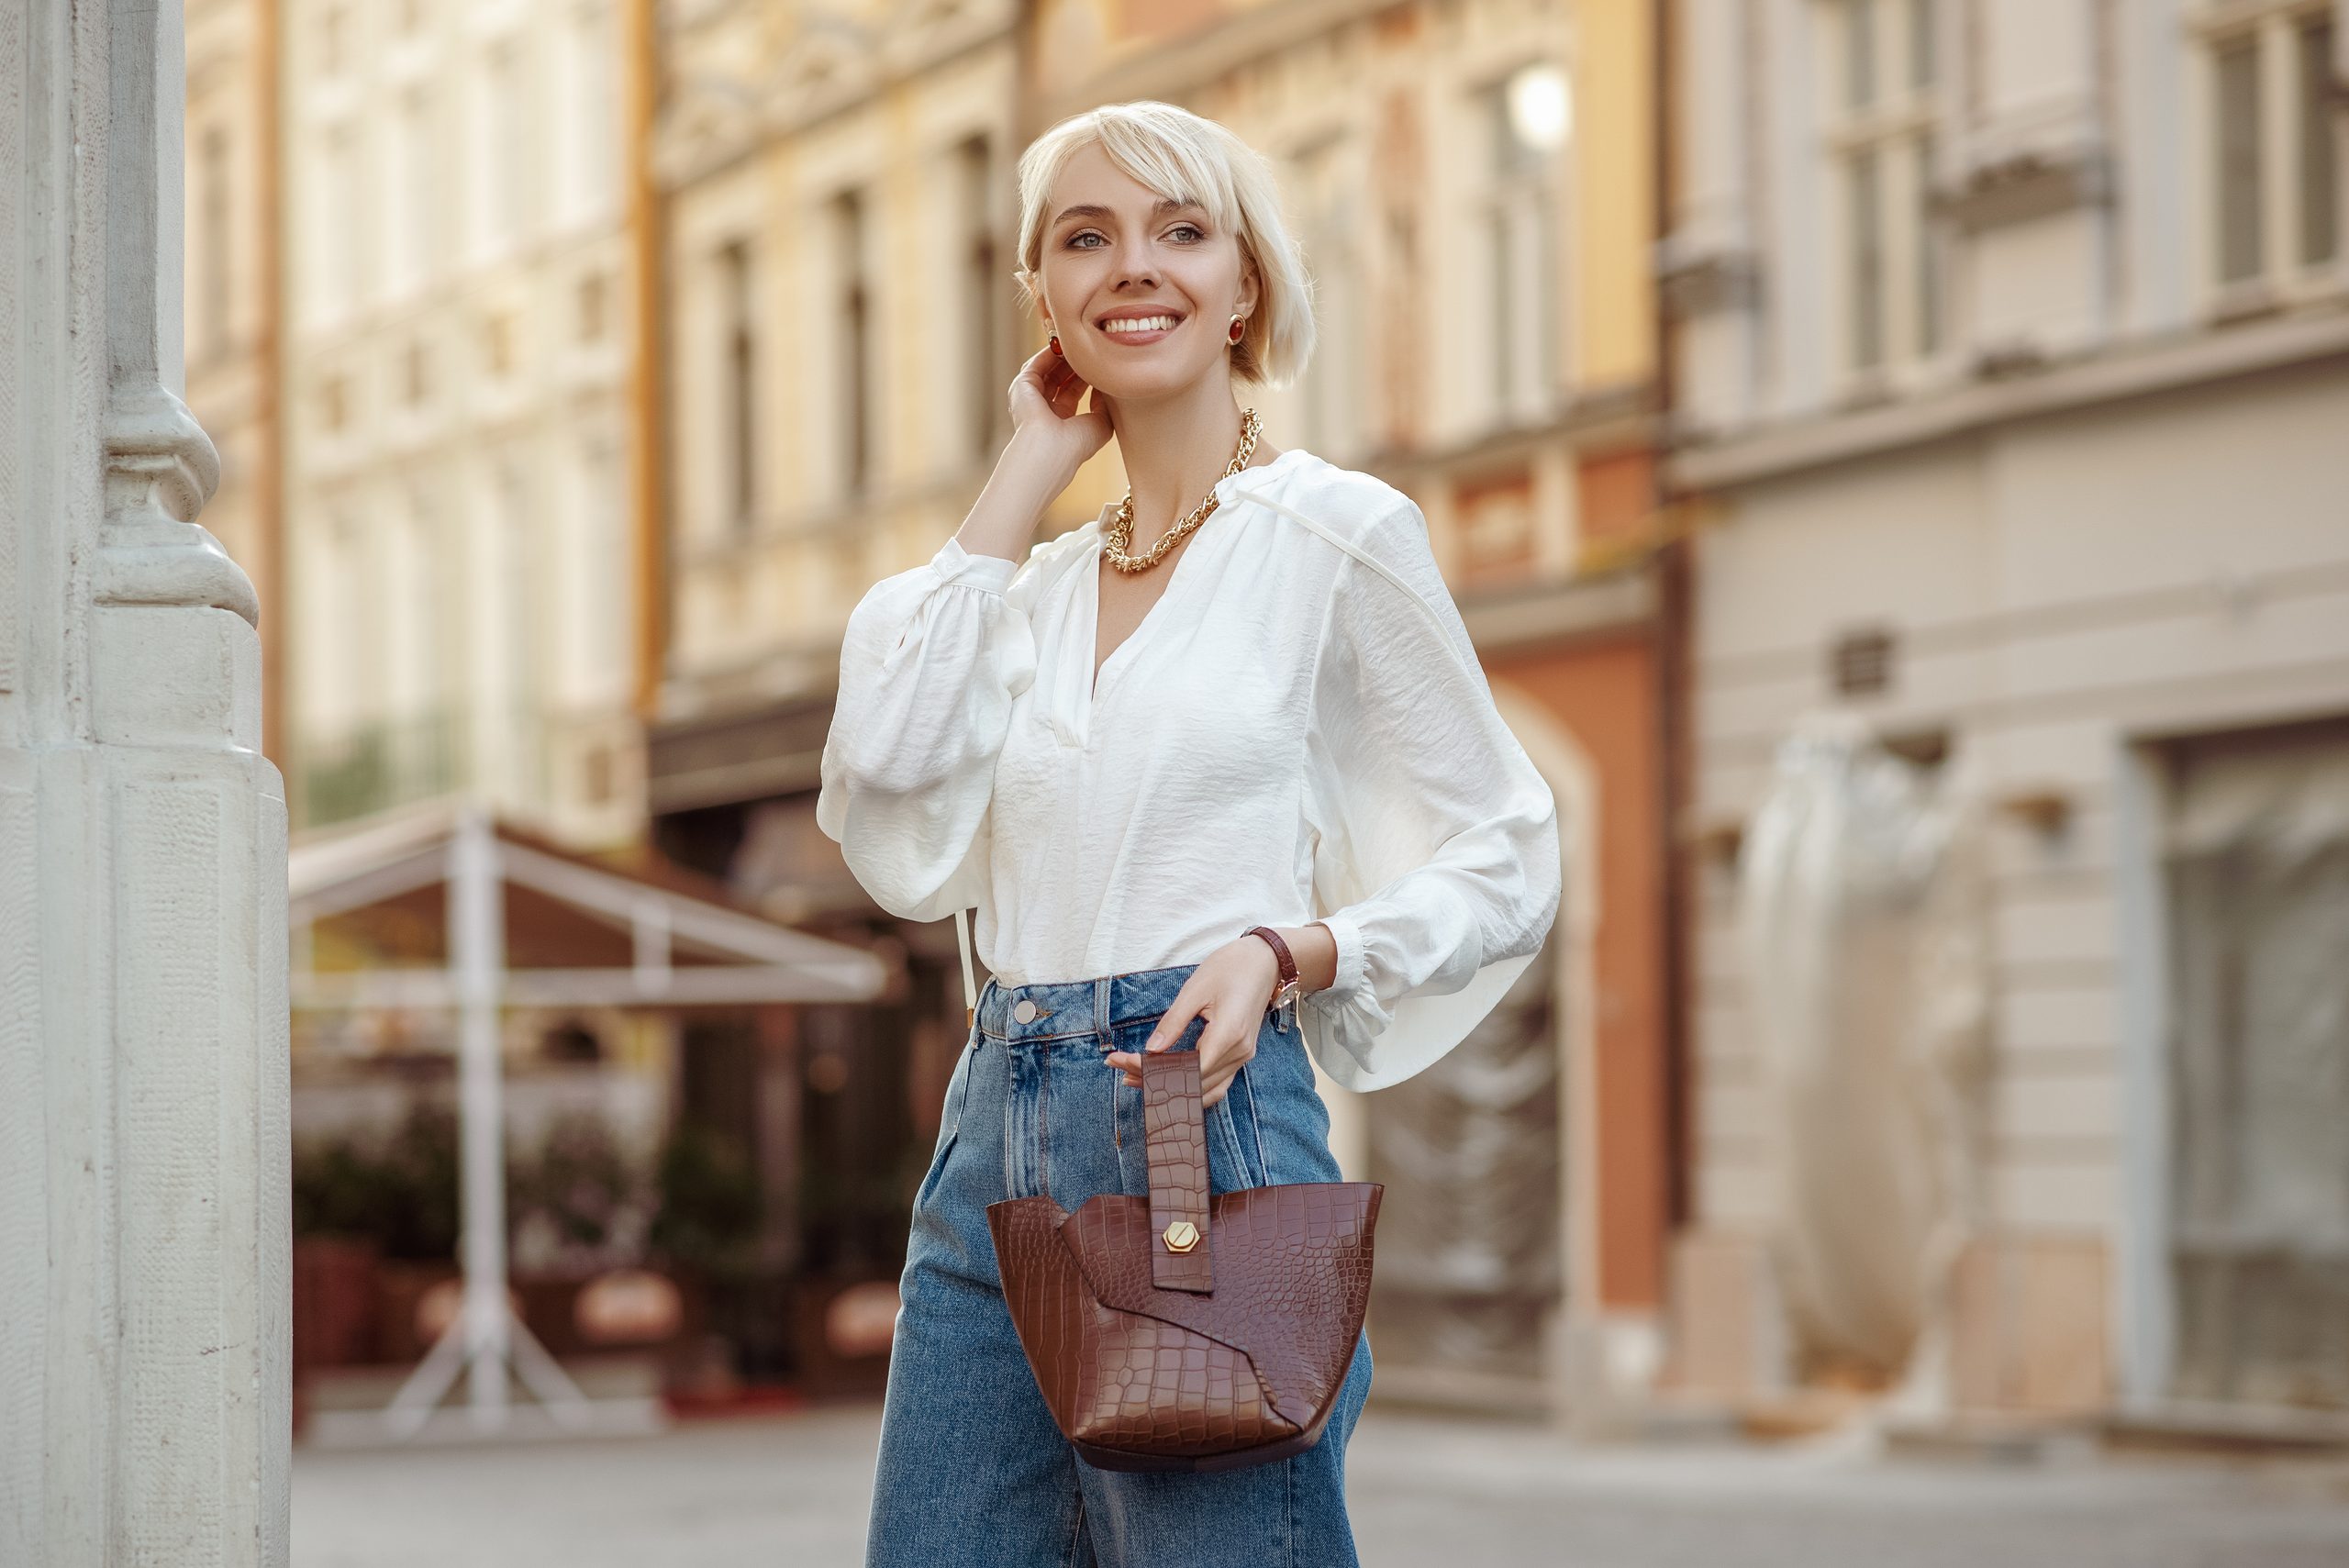 Street-Style Foto von glücklich lächelnden modischen Frau mit trendiger weißer Bluse, High-Tailan Jeans, halten braunen faux Croco-Leder Textur-Tasche. Modell posiert in der Straße der europäischen Stadt.